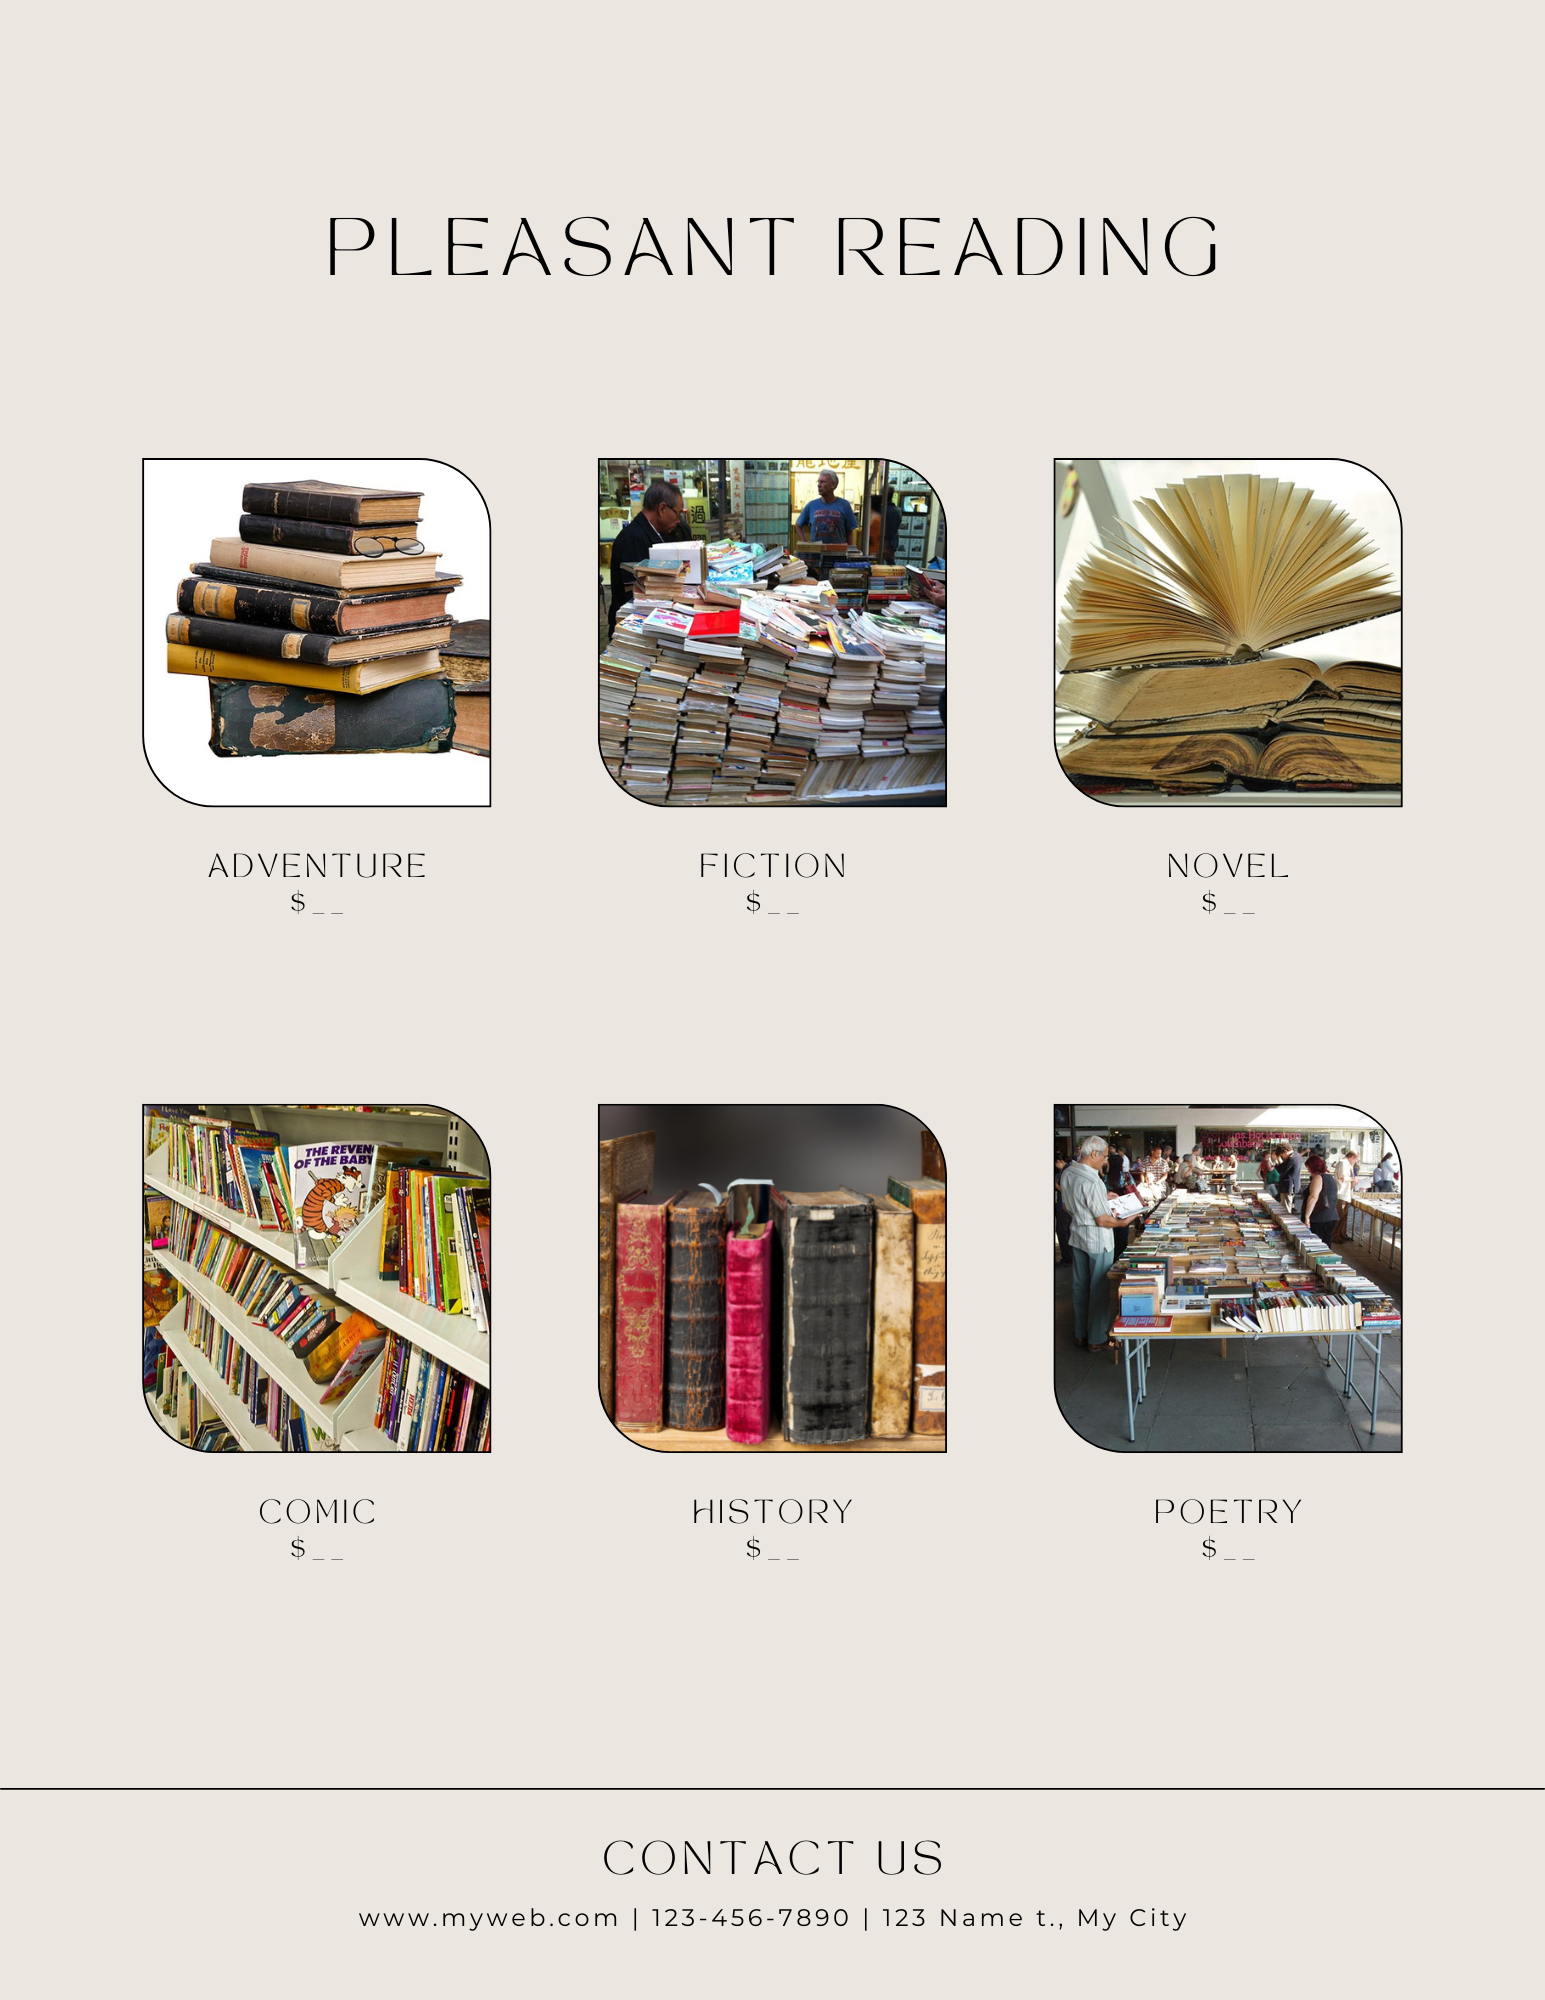 Seis pequeñas imágenes relacionadas con la lectura